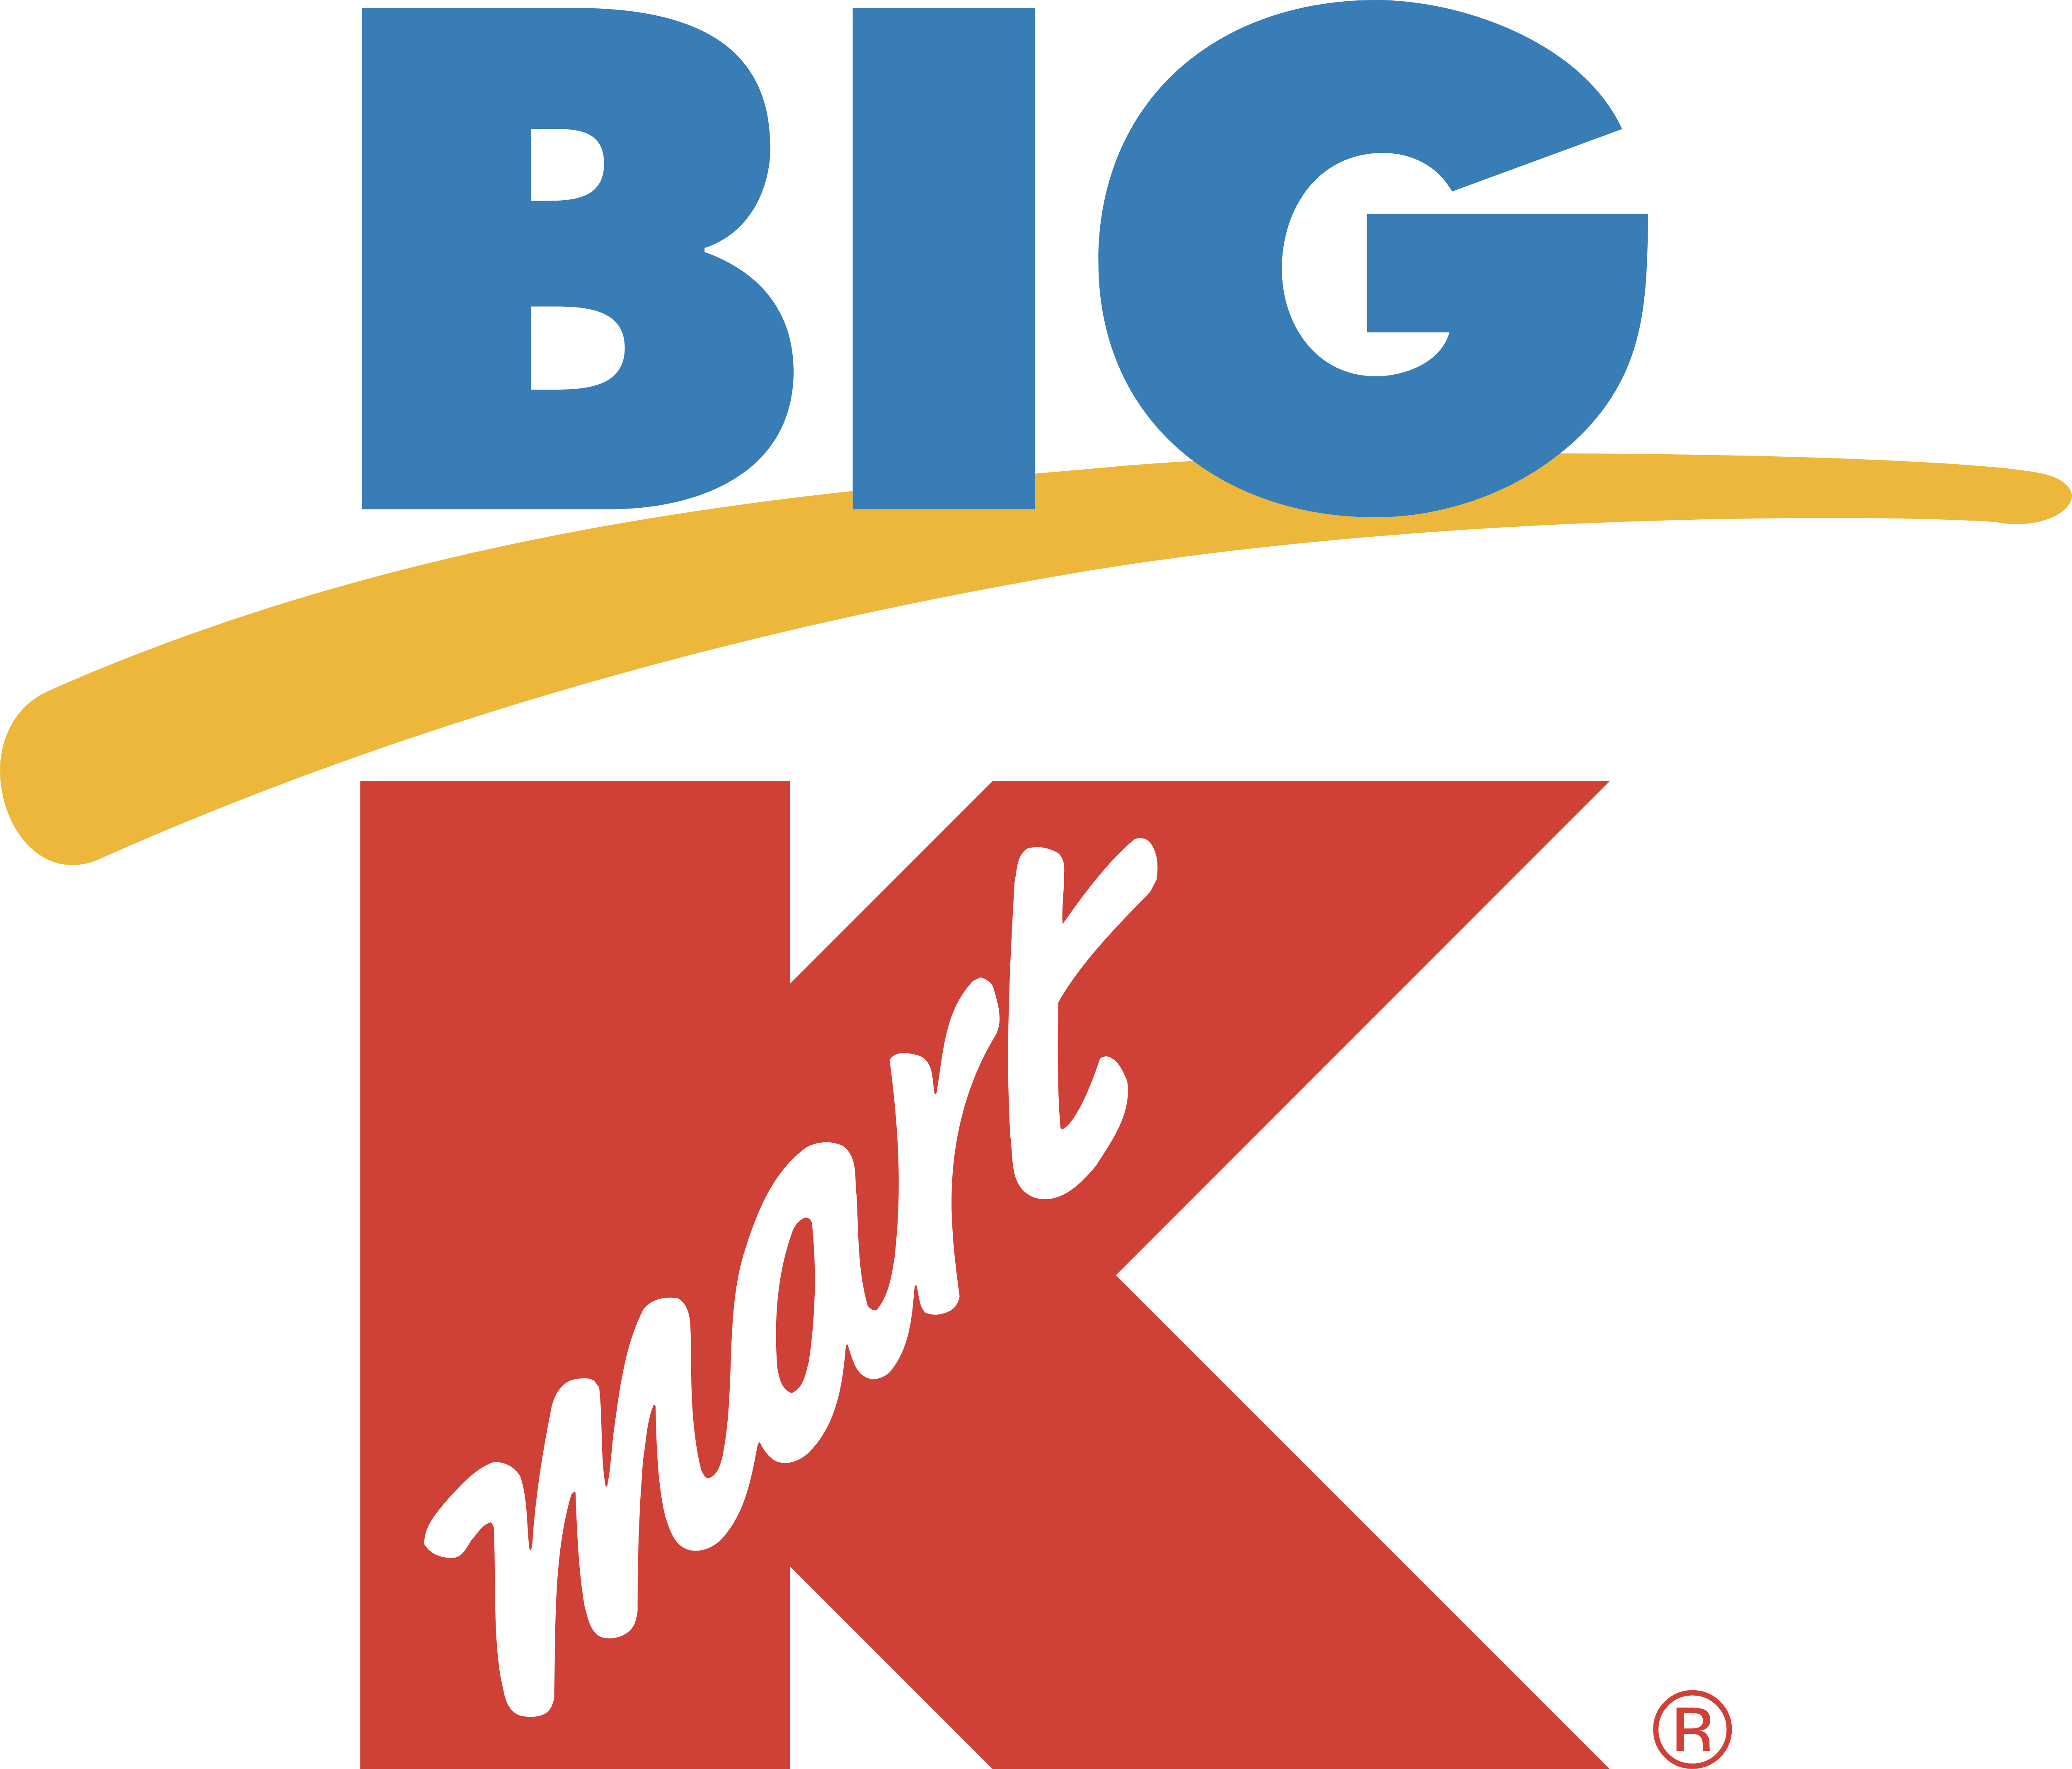 Big Kmart Logo - K Mart